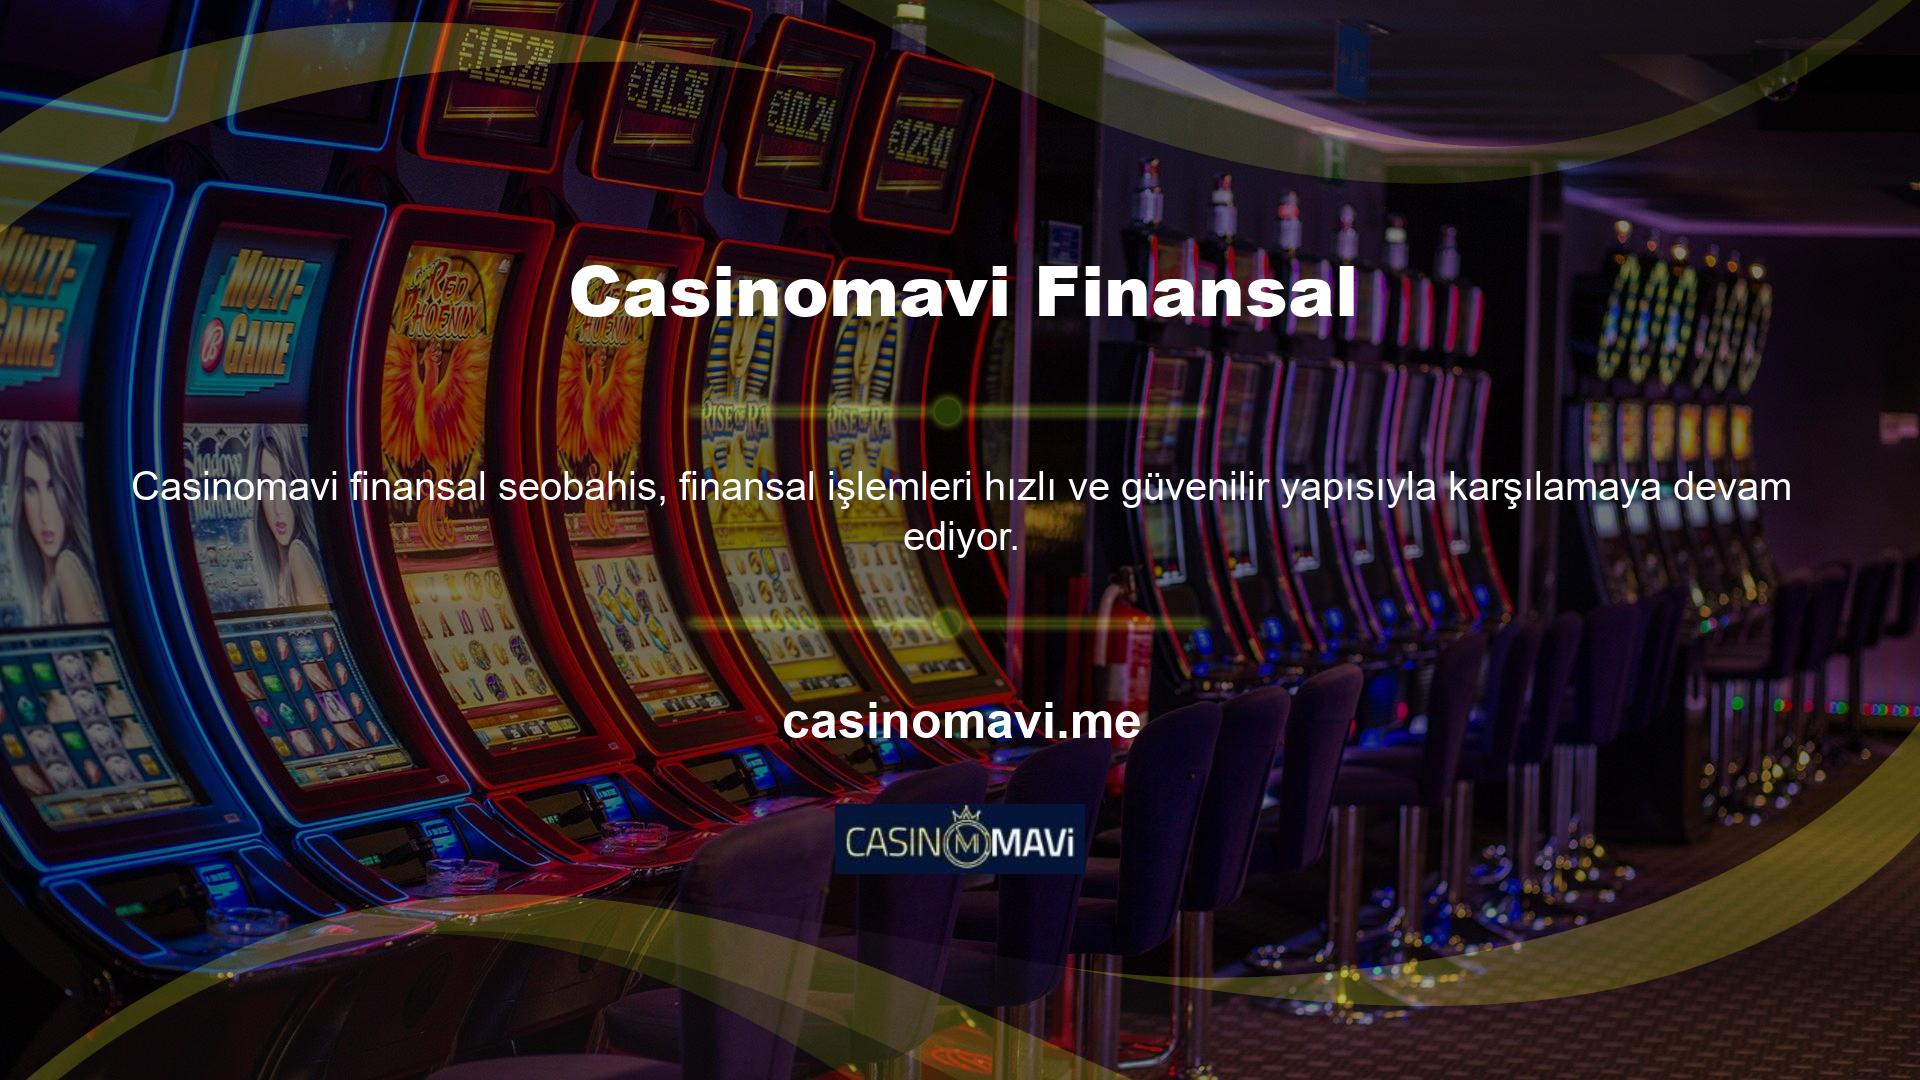 Casino siteleri, kullanıcıların finansal işlem işlemlerini yalnızca kimlik ve adres bilgilerini kullanarak tamamlamalarına olanak tanır